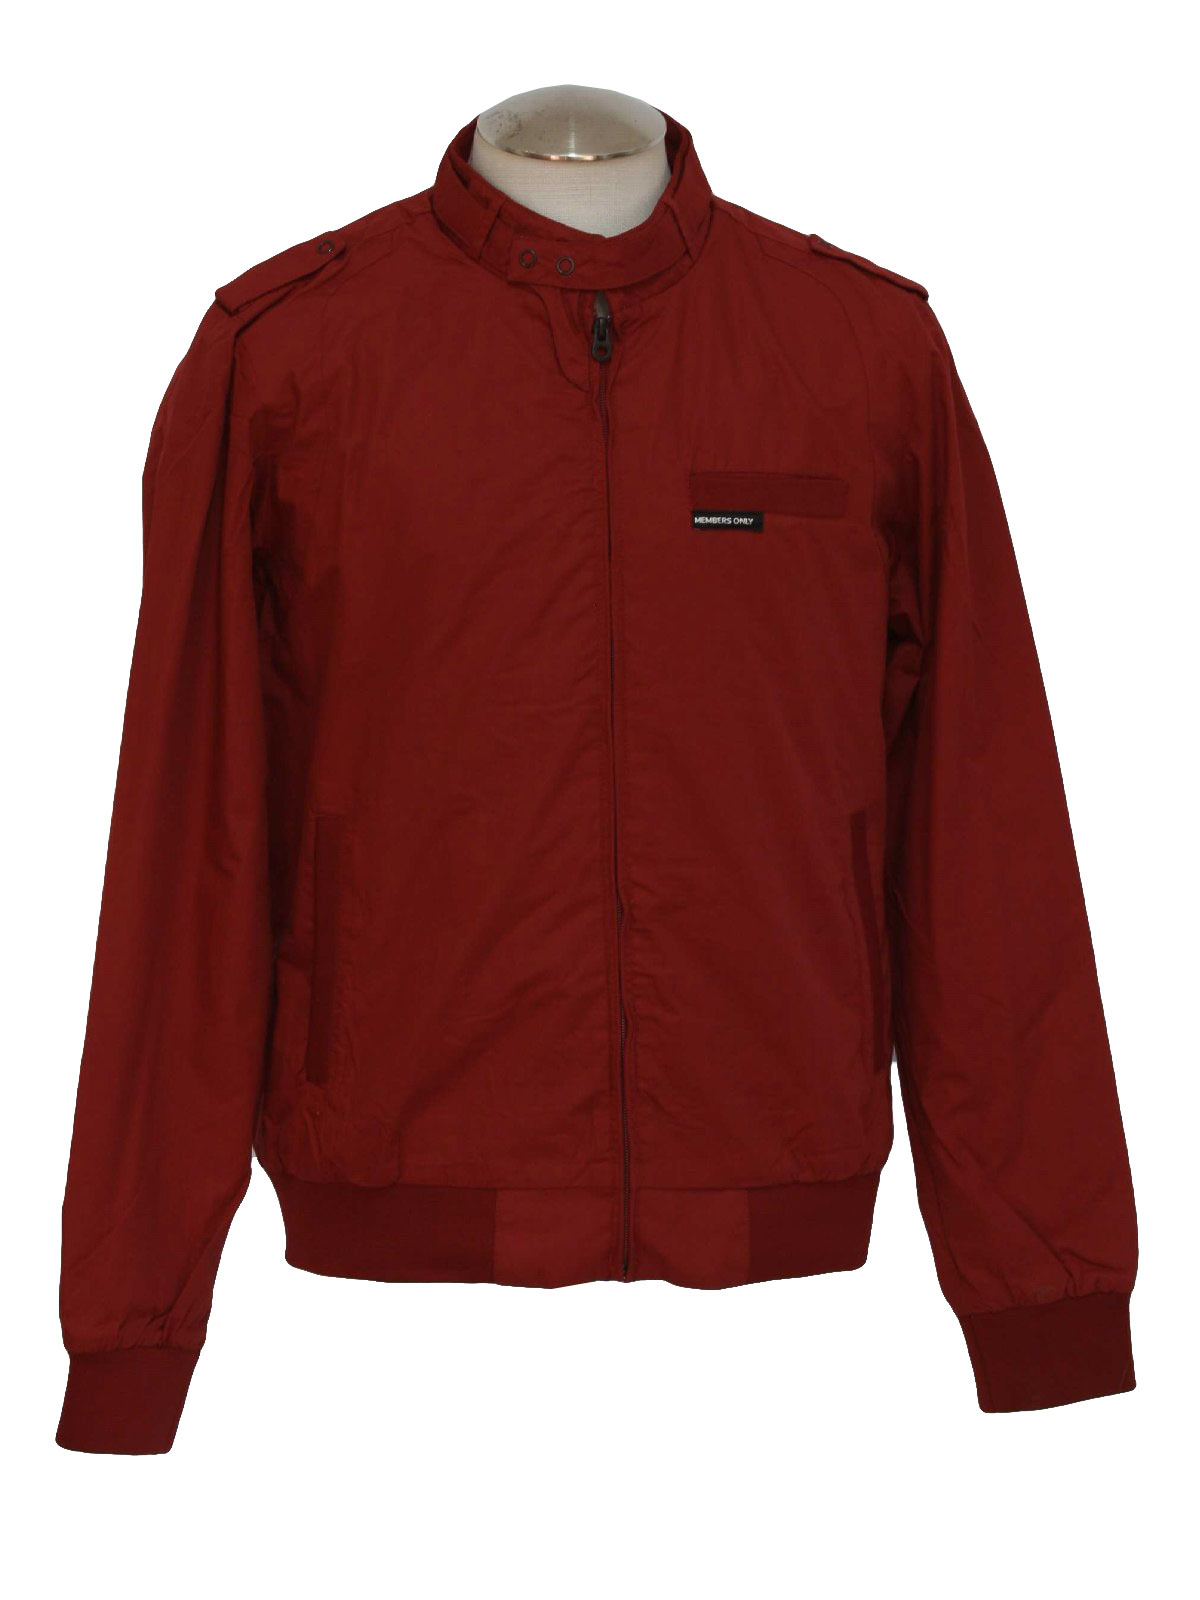 Vintage 80s Jacket: 80s style -Members Only- Mens dark brick red ...